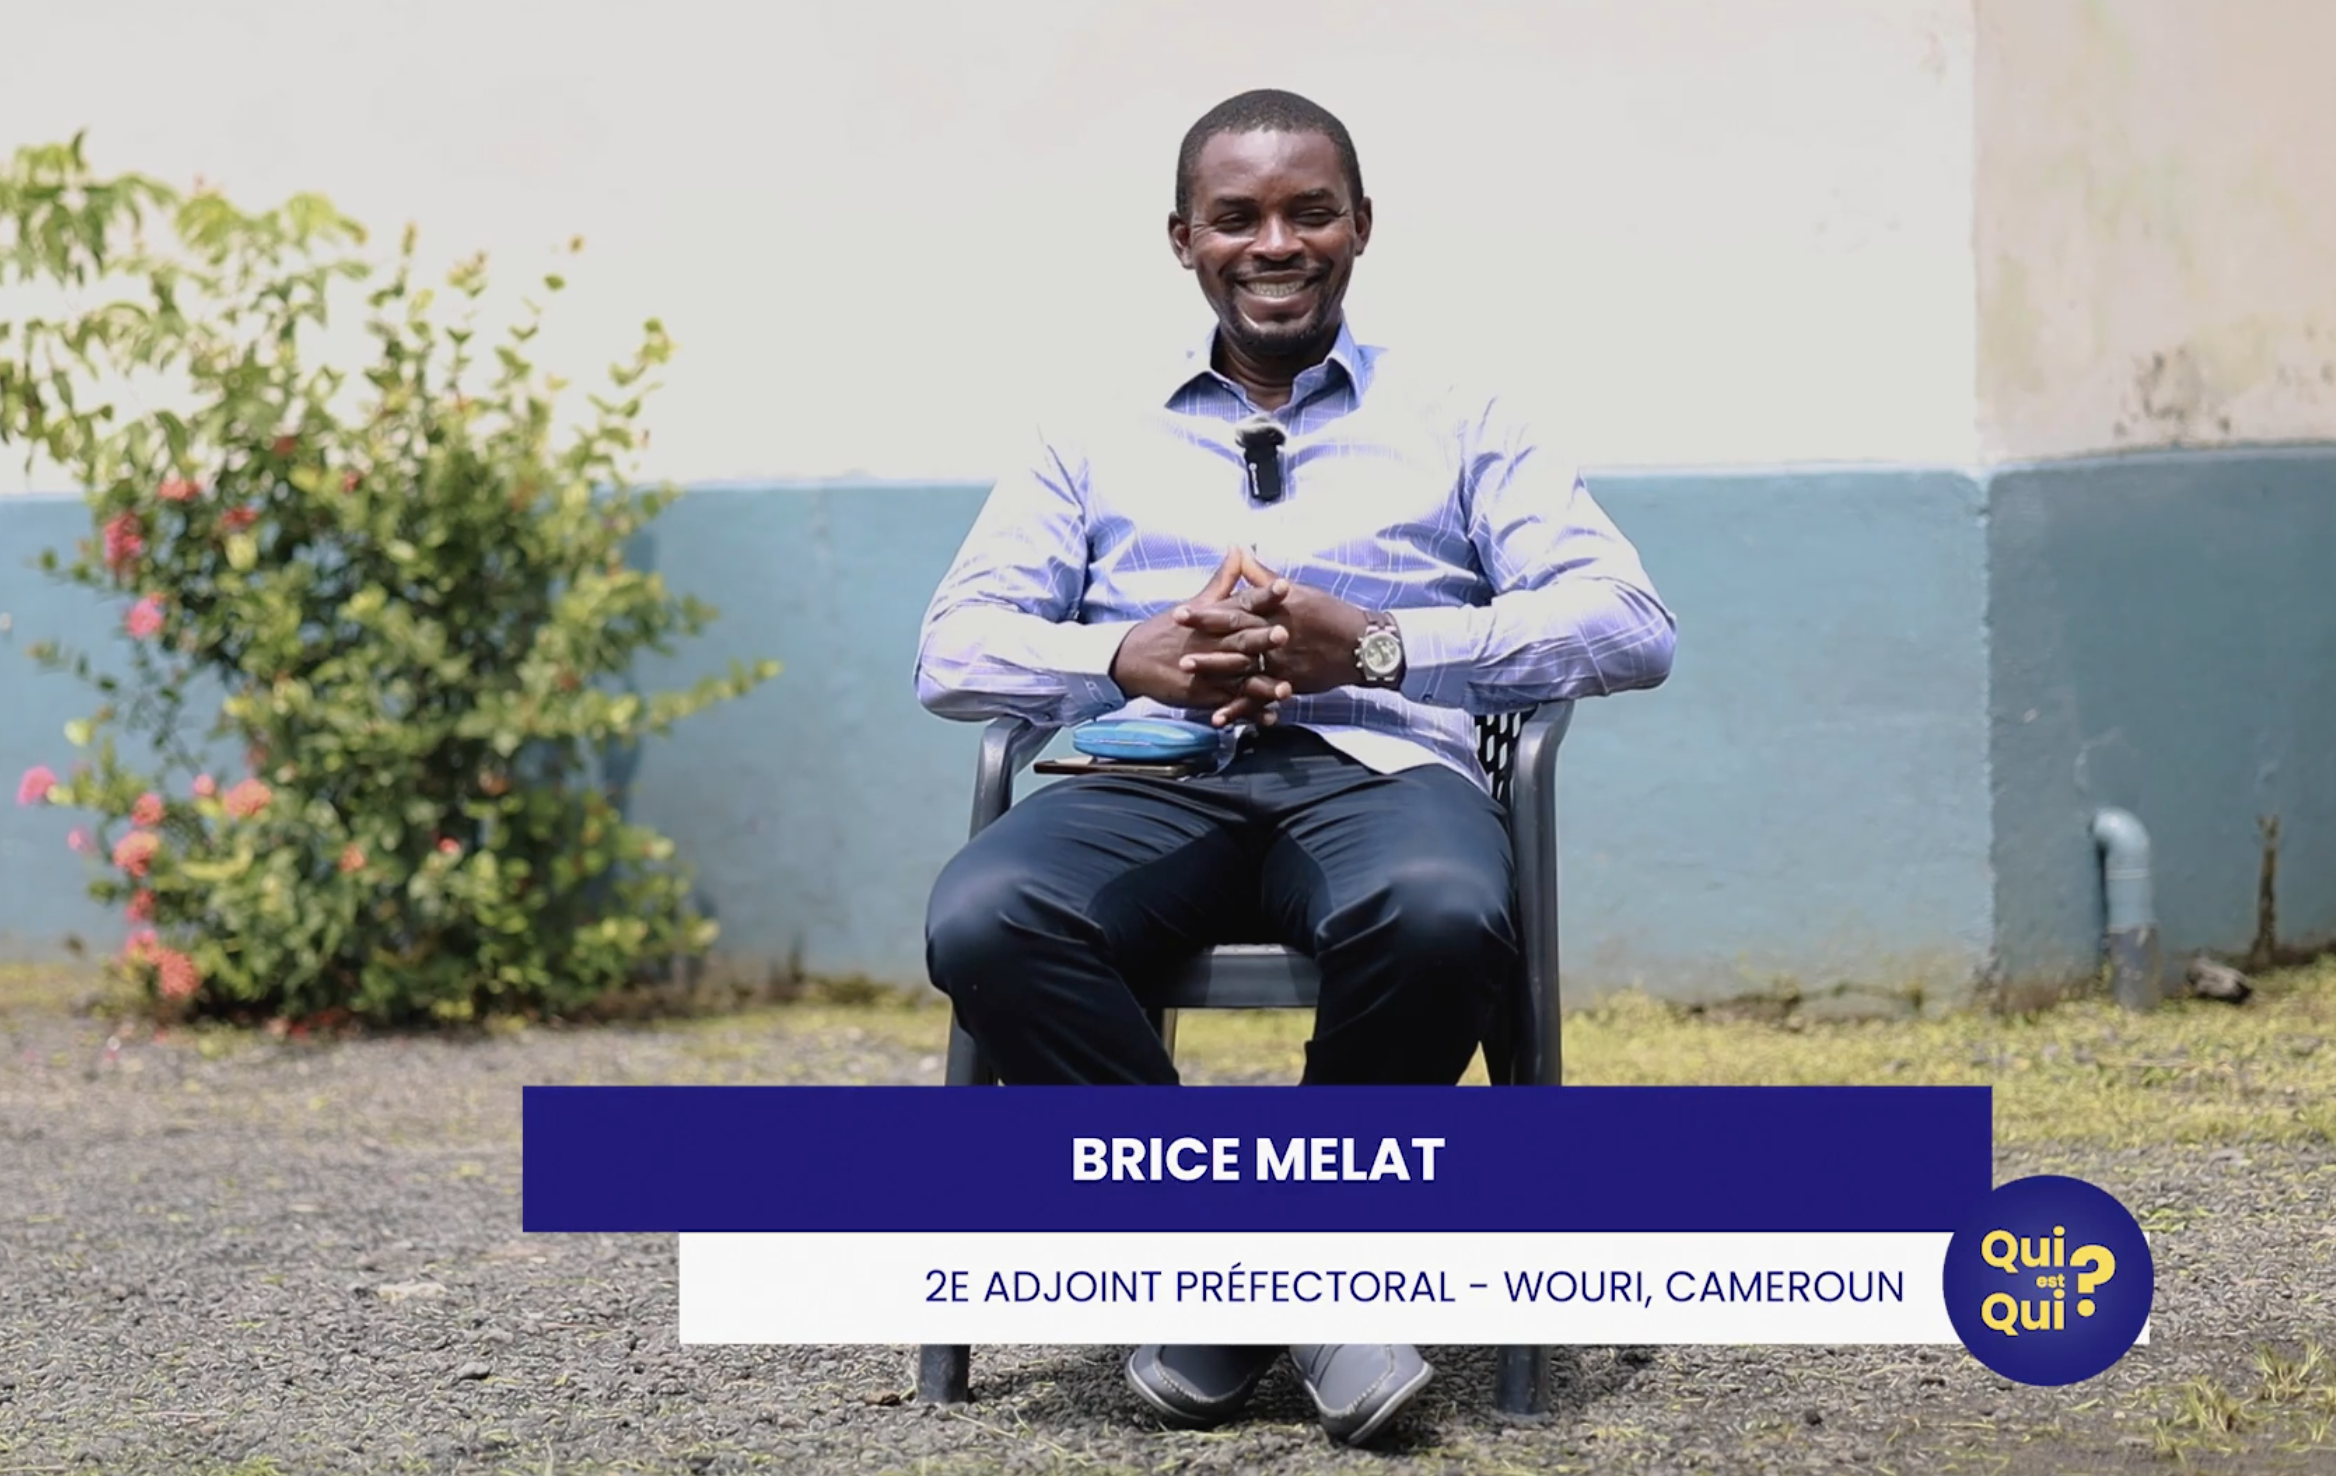 Monsieur Brice MELAT, Adjoint Préfectoral et Administration Territoriale à Douala (Cameroun), a accordé une interview exclusive à Zenabou NDOCKI, animatrice de l'émission "Qui est qui ?" sur Chrétiens TV.